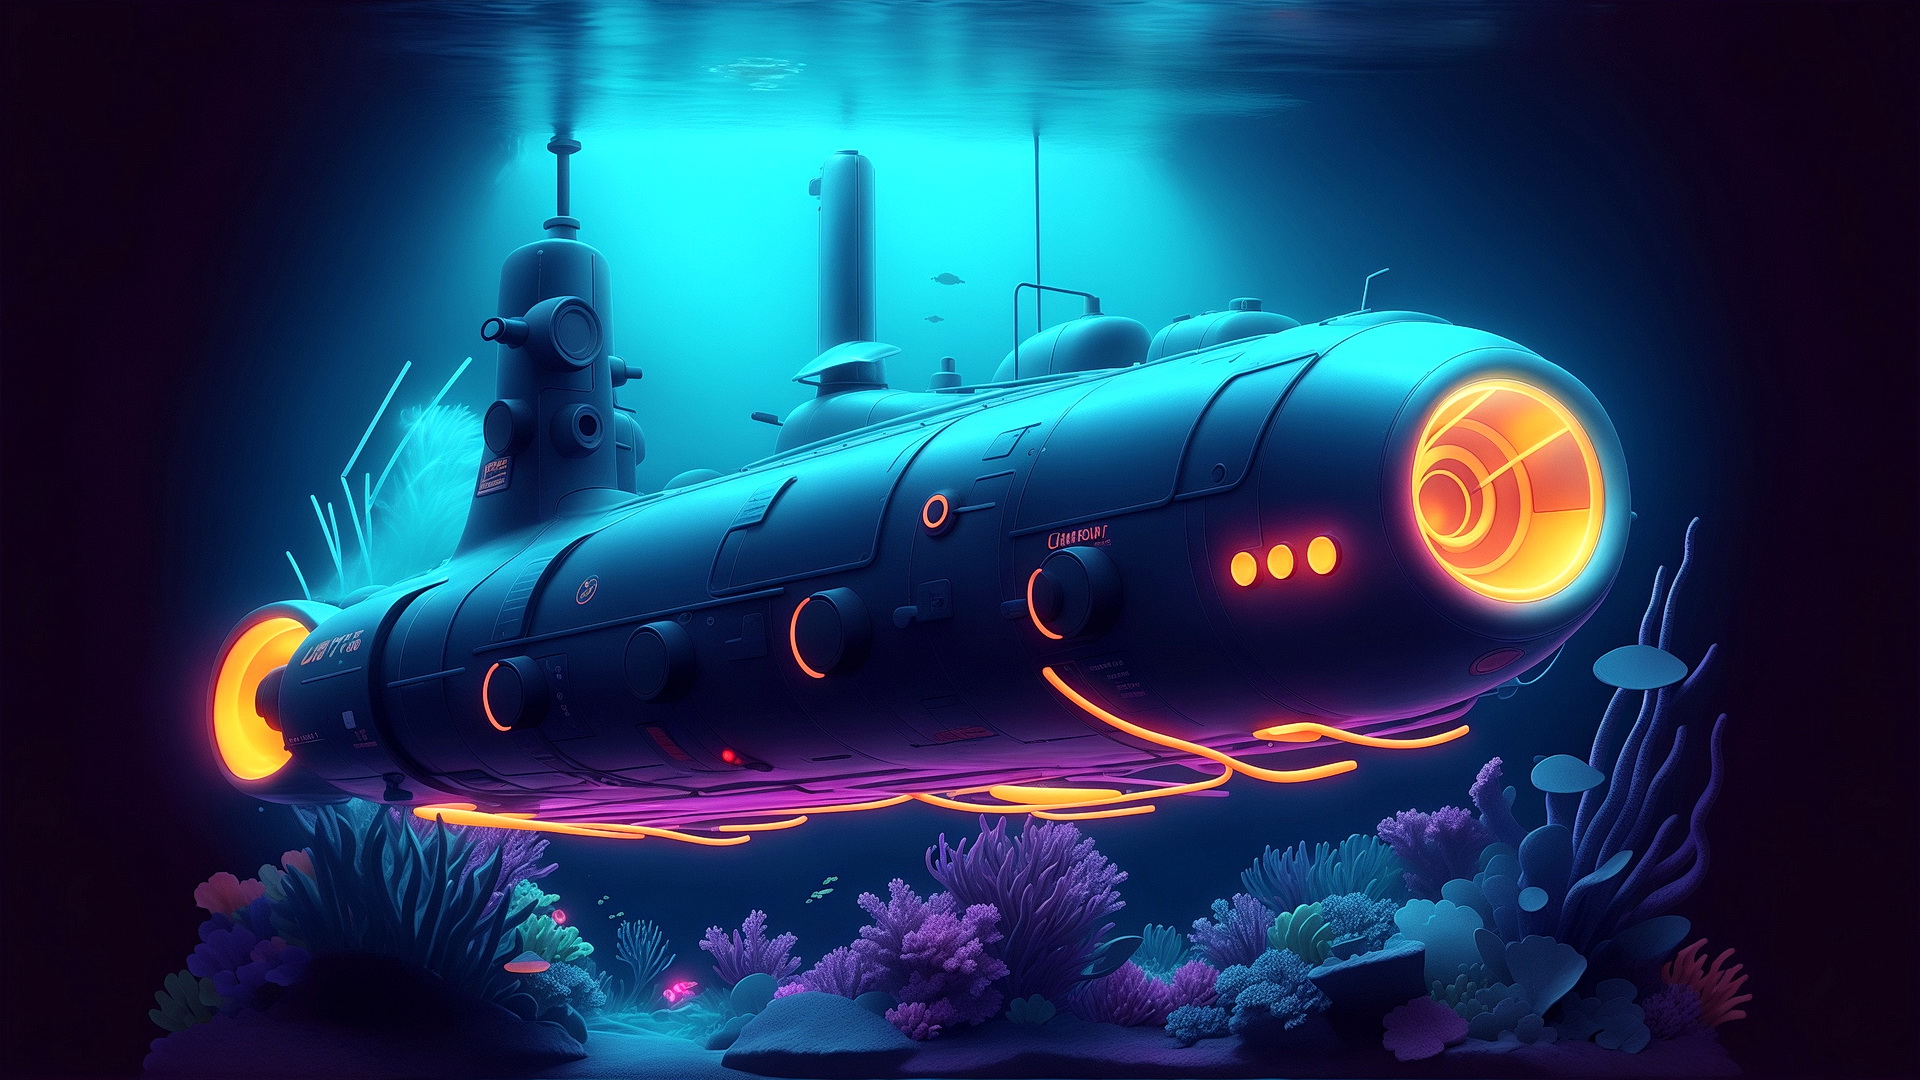 Бесплатное фото Подводная лодка под водой в темноте